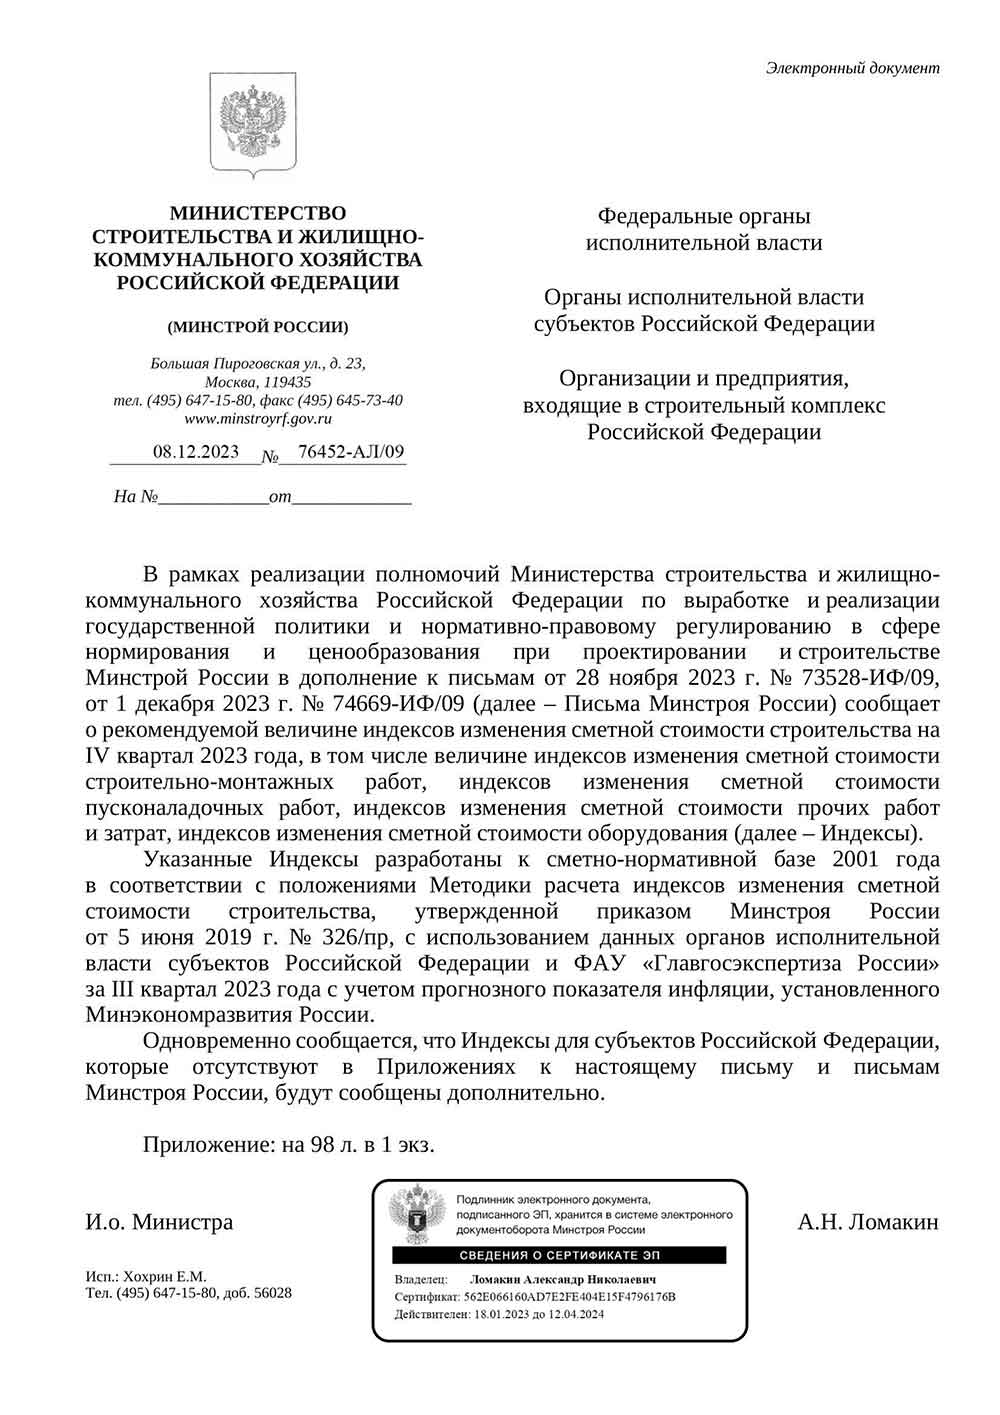 Письмо Минстроя РФ №76452-АЛ/09 от 08.12.2023 г.